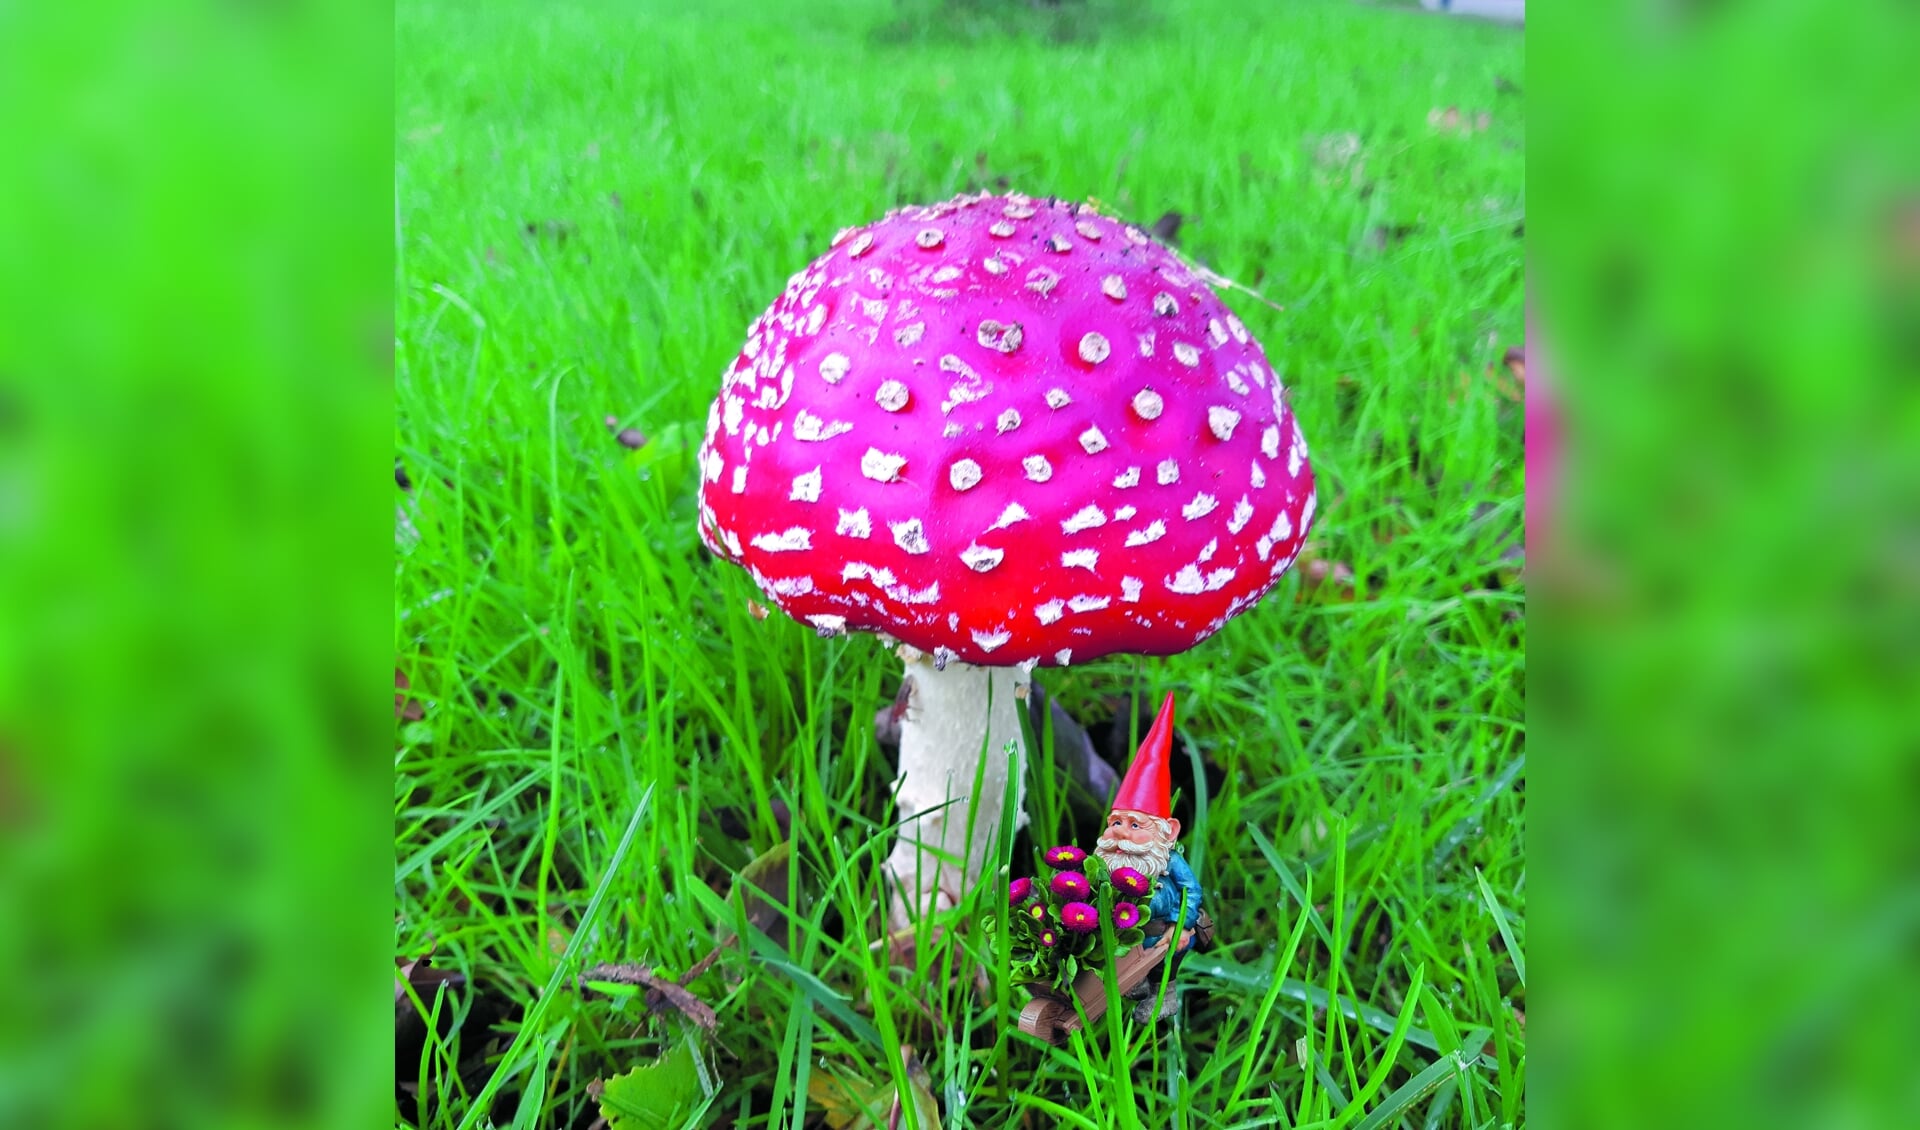 Onder een grote paddenstoel, rood met witte stippen, zat kabouter Spillebeen. Heb jij deze mooie paddenstoel met de kabouter eronder ook al gespot?